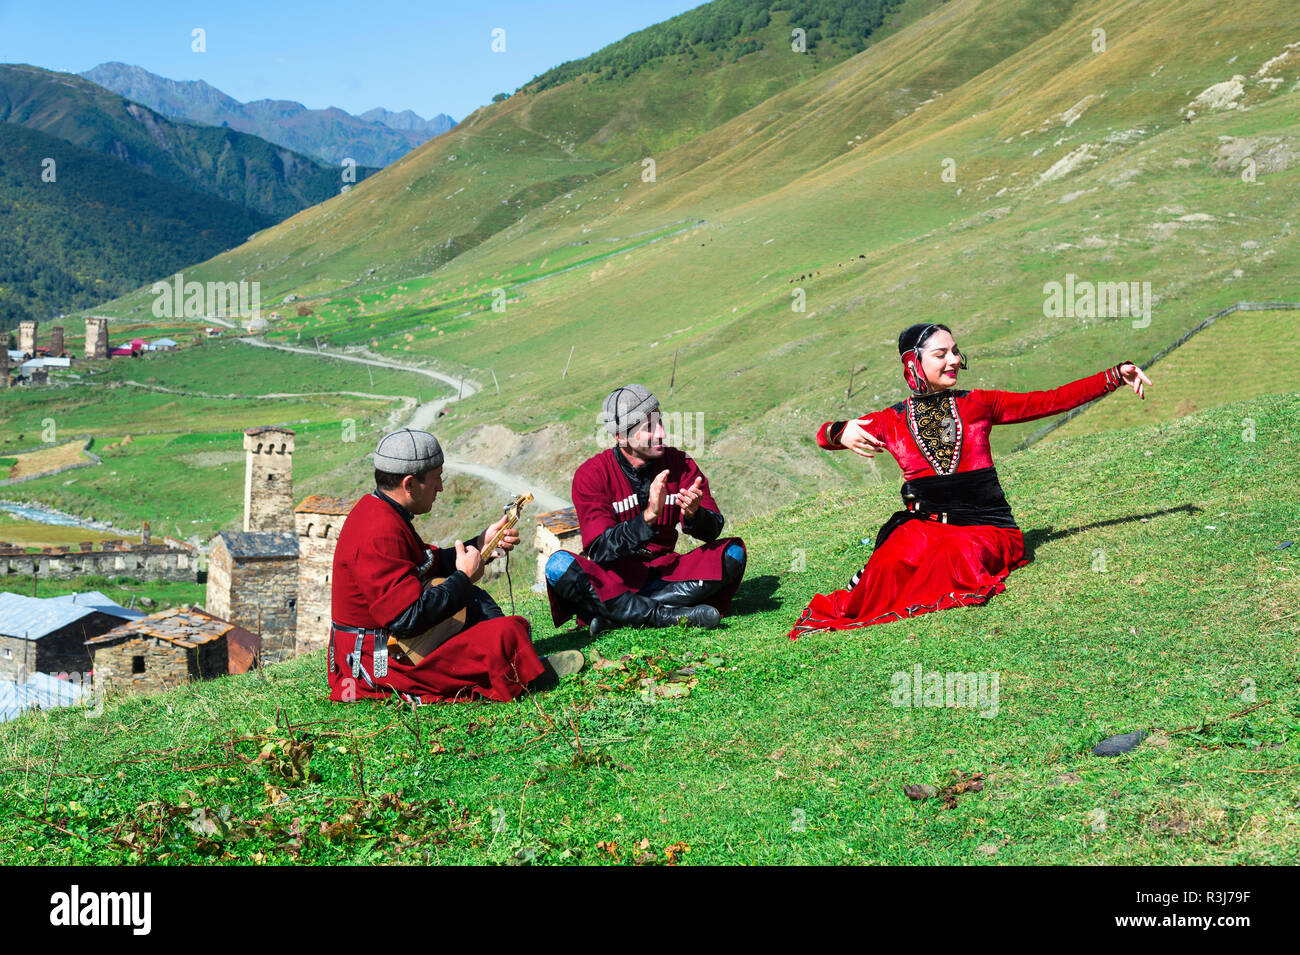 Il popolo georgiano di un gruppo folcloristico giocando Panduri e balli in stile georgiano tradizionale vestiti, Ushguli, regione di Svaneti Foto Stock